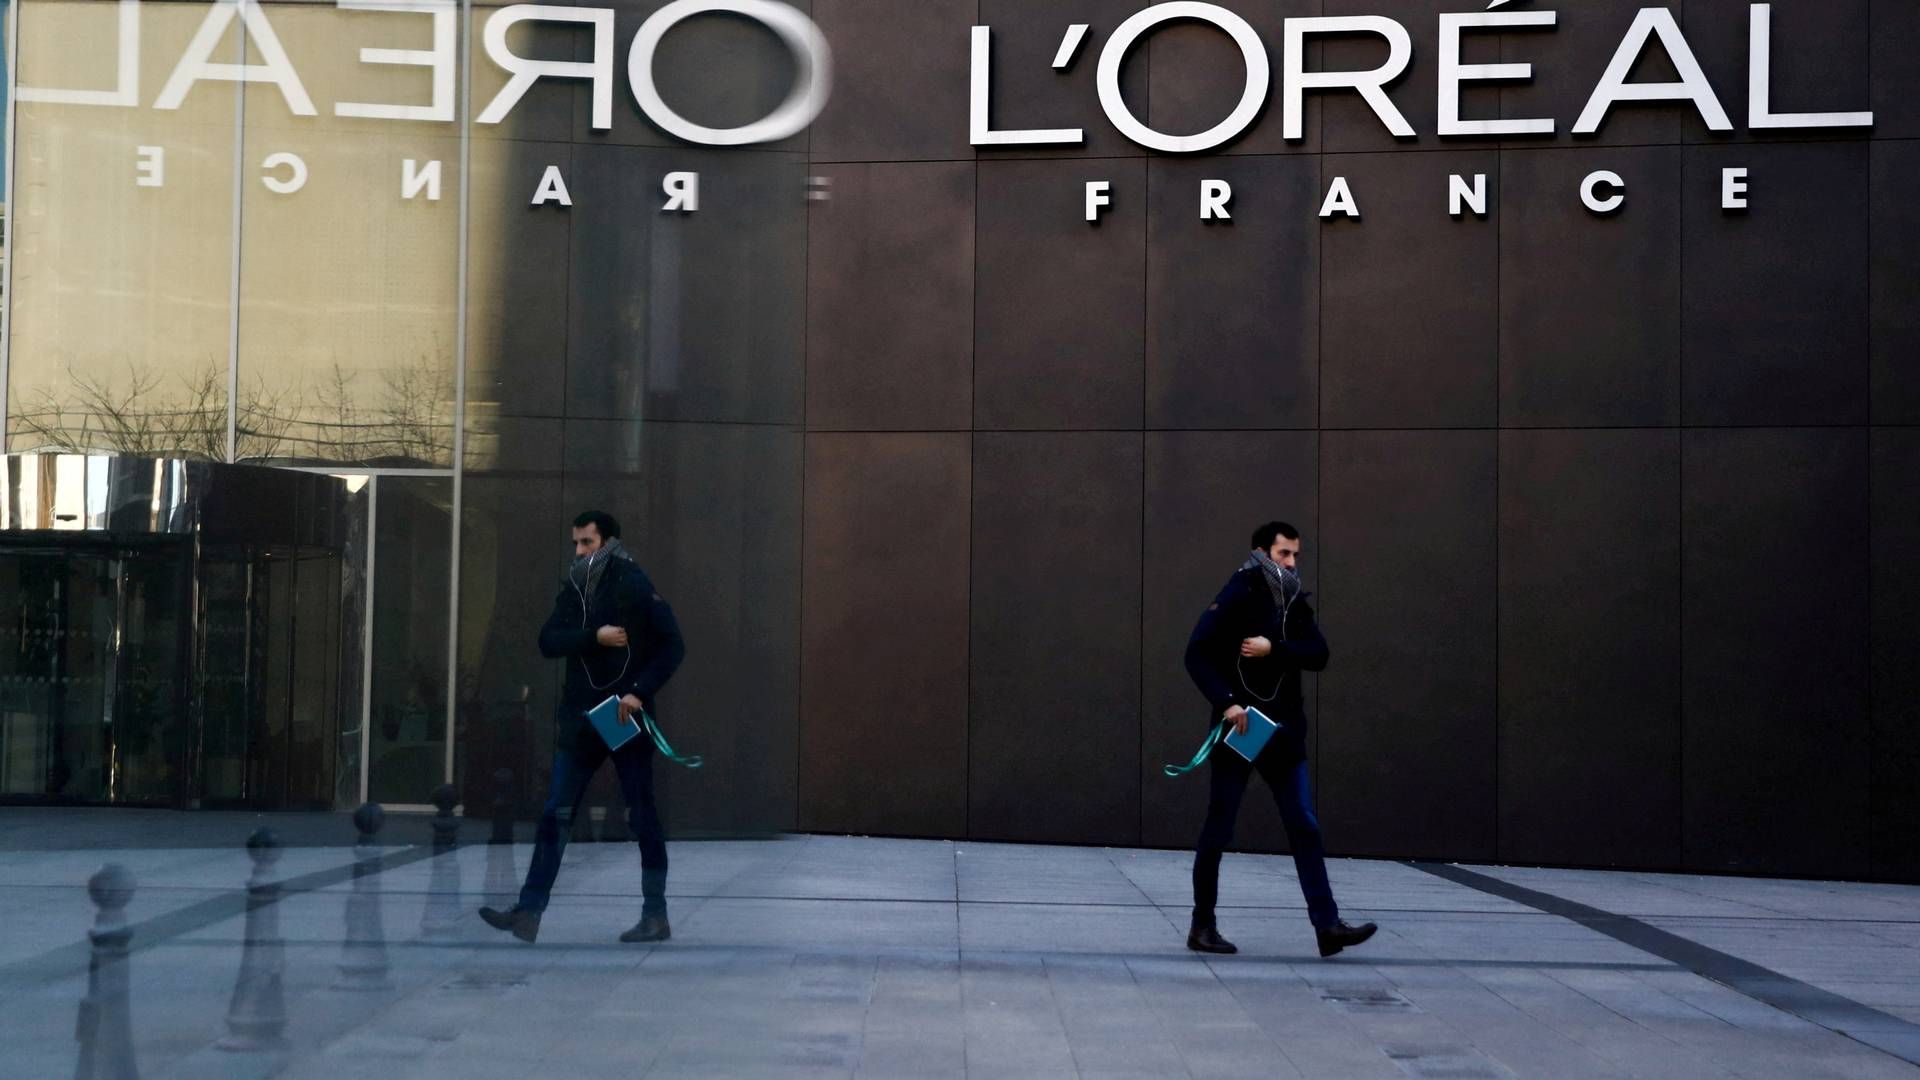 Franske L'Oreal er en af verdens største kosmetikkoncerner. | Foto: Gonzalo Fuentes